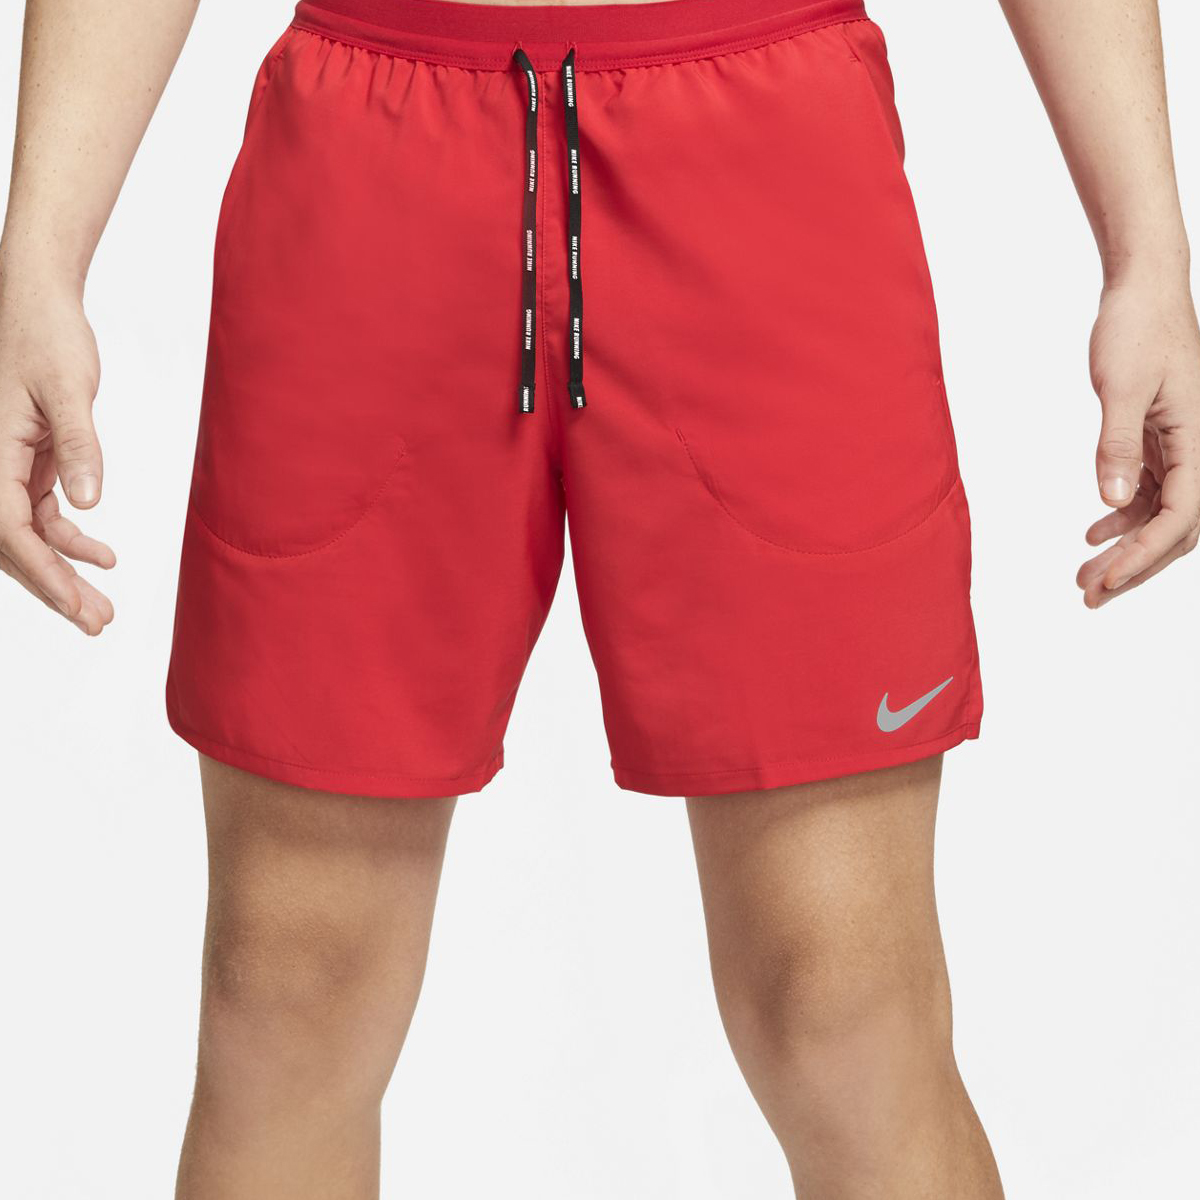 Nike Flex Stride Short, , large image number null